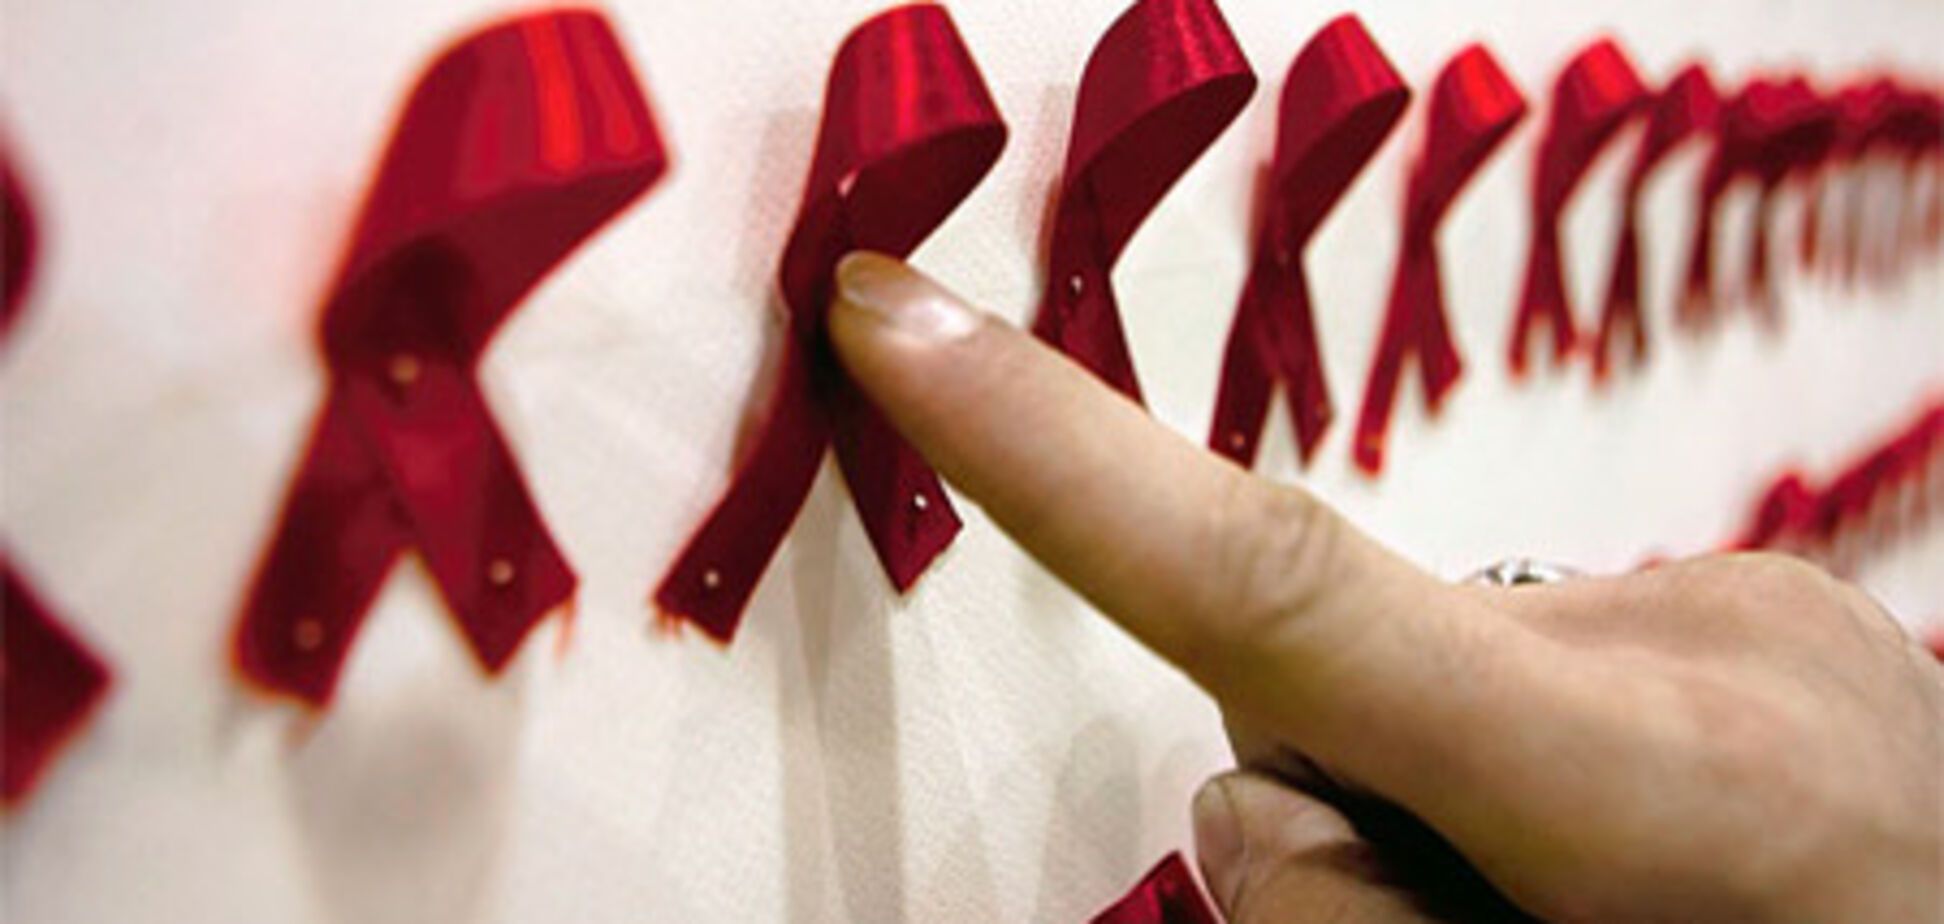 Евросоюз усиливает борьбу со СПИДом в мире